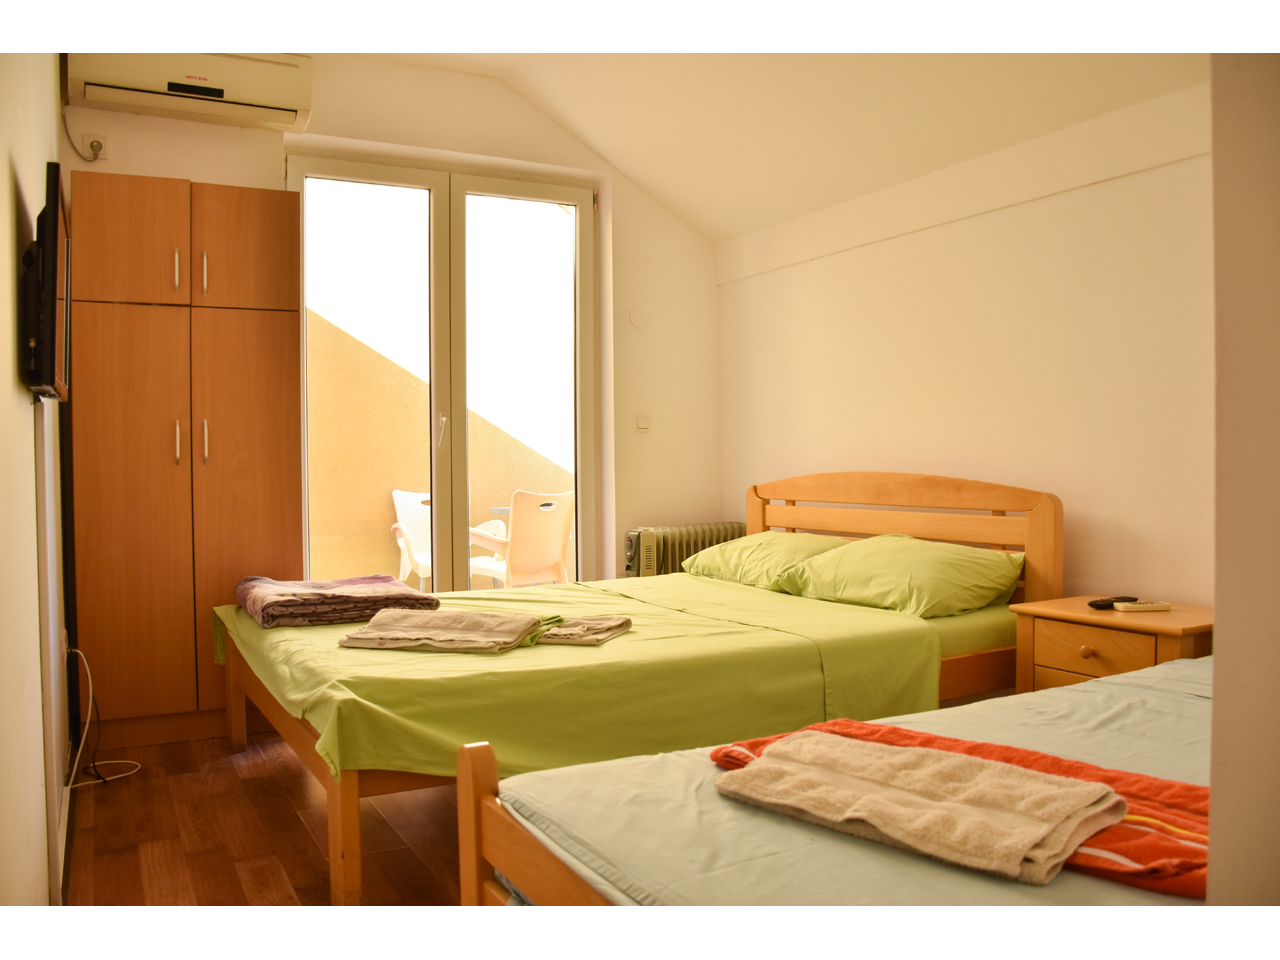 VILLA MAKSIMUM Accommodation, room renting Beograd